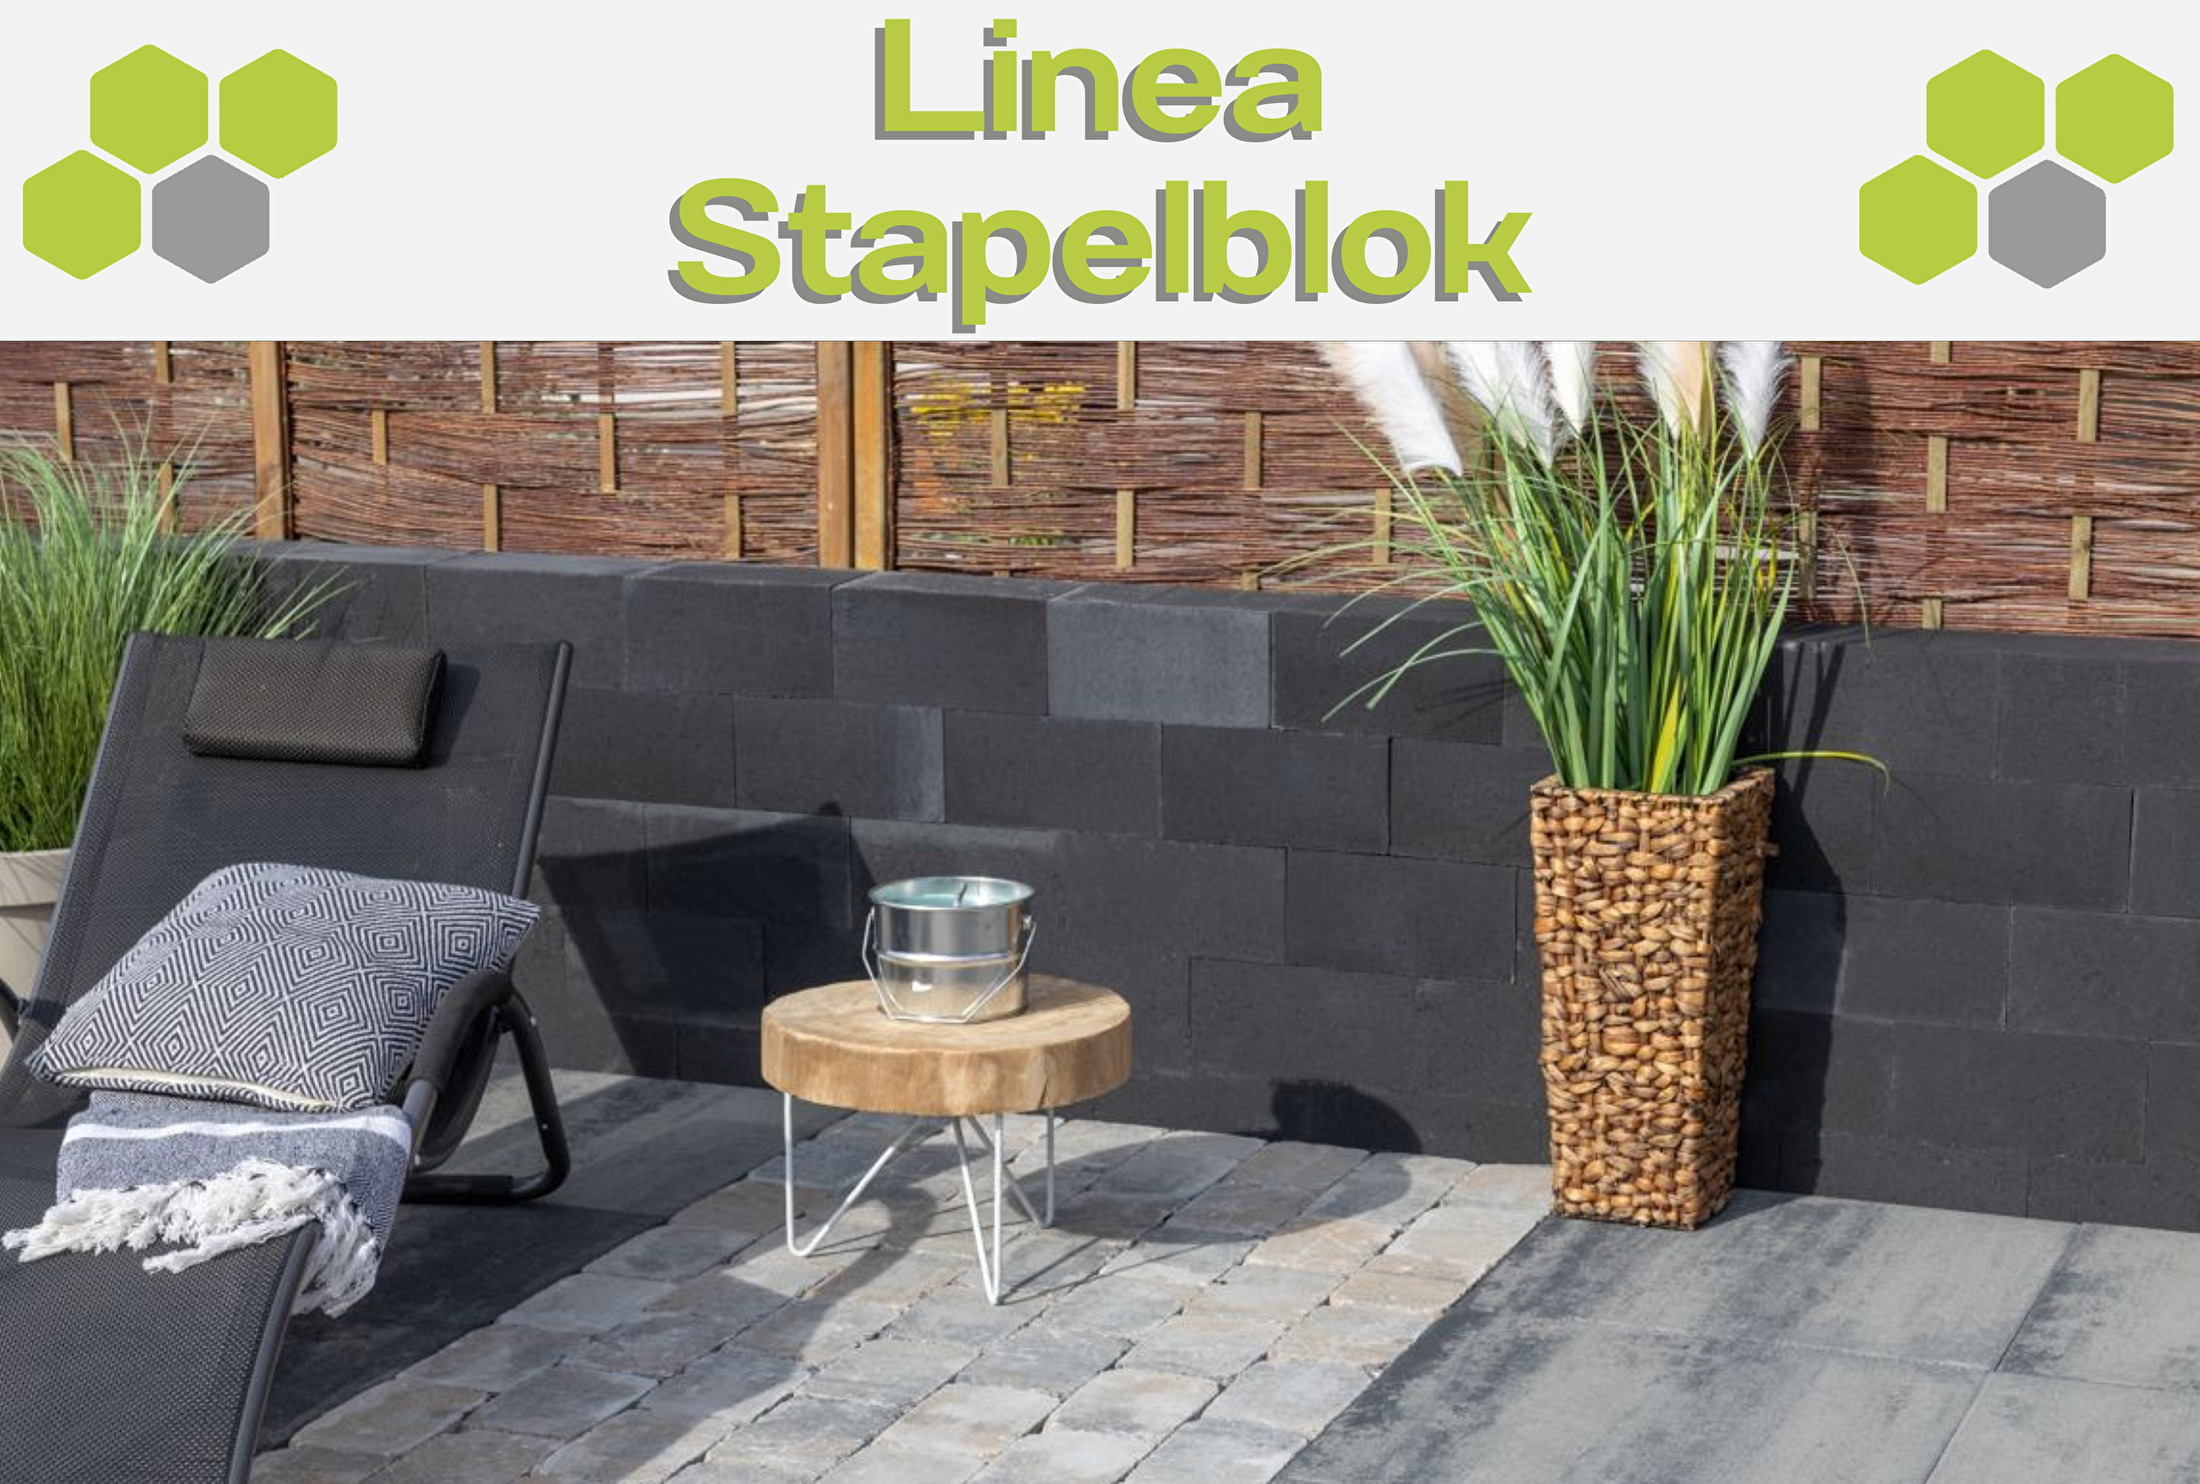 Linea Stapelblok